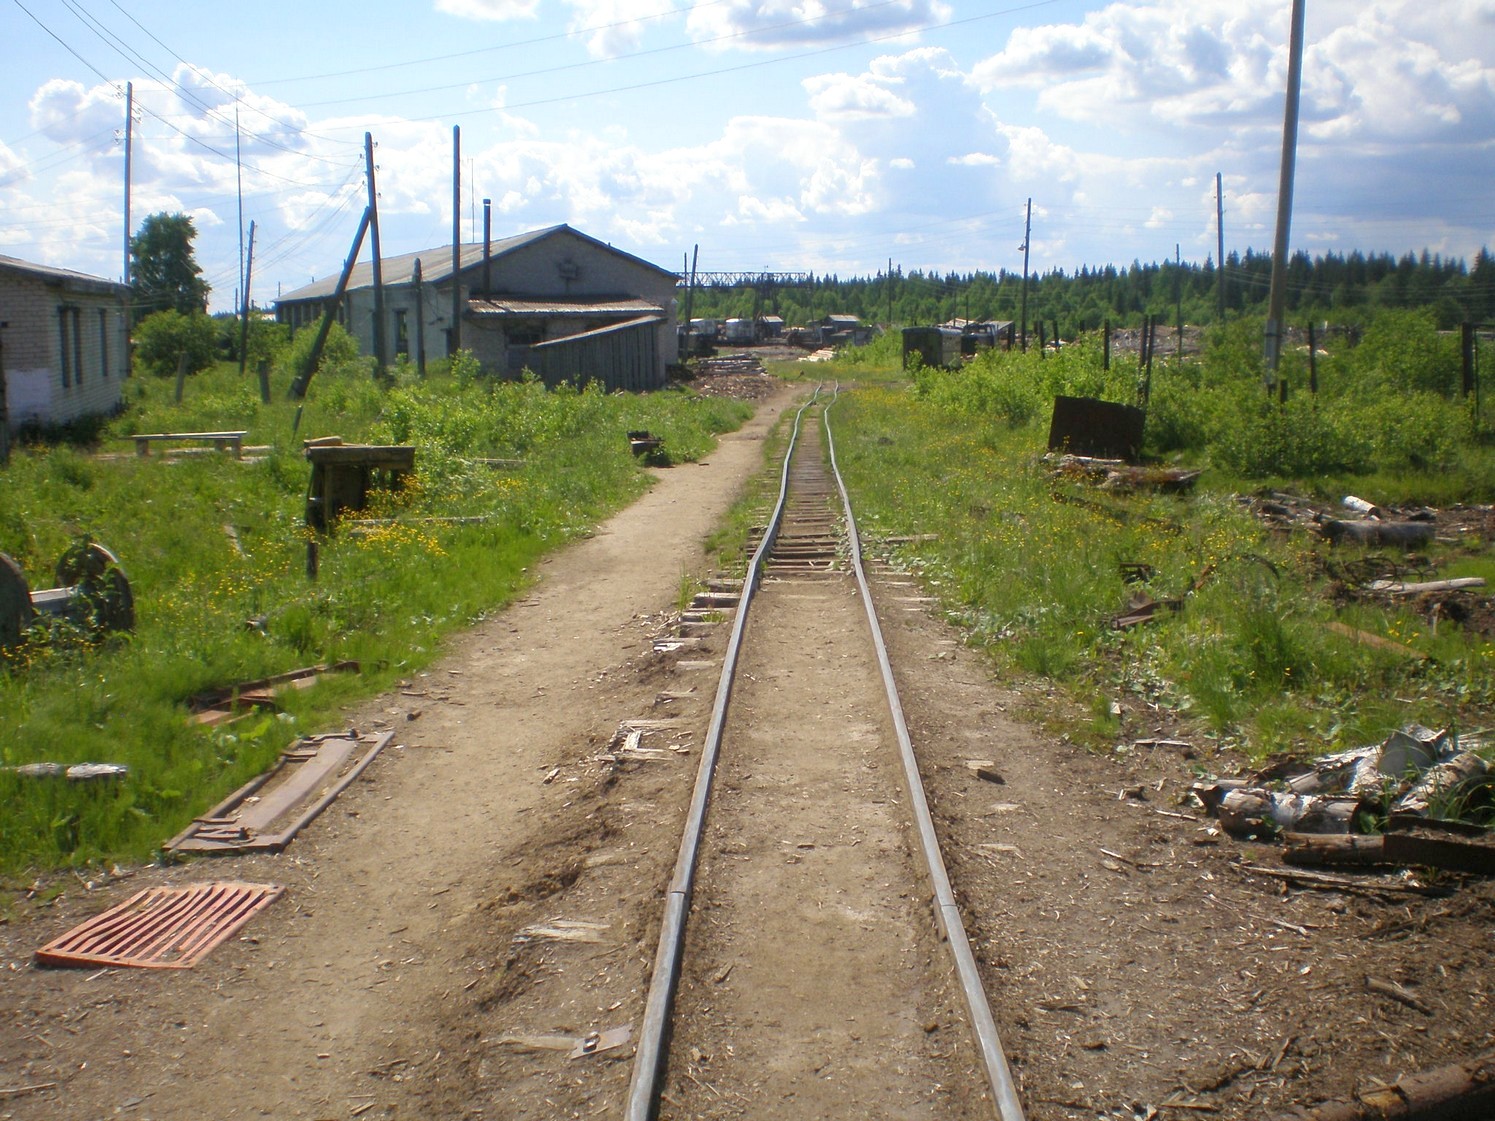 Ивакшанская узкоколейная железная дорога — фотографии, сделанные в 2009 году (часть 17)